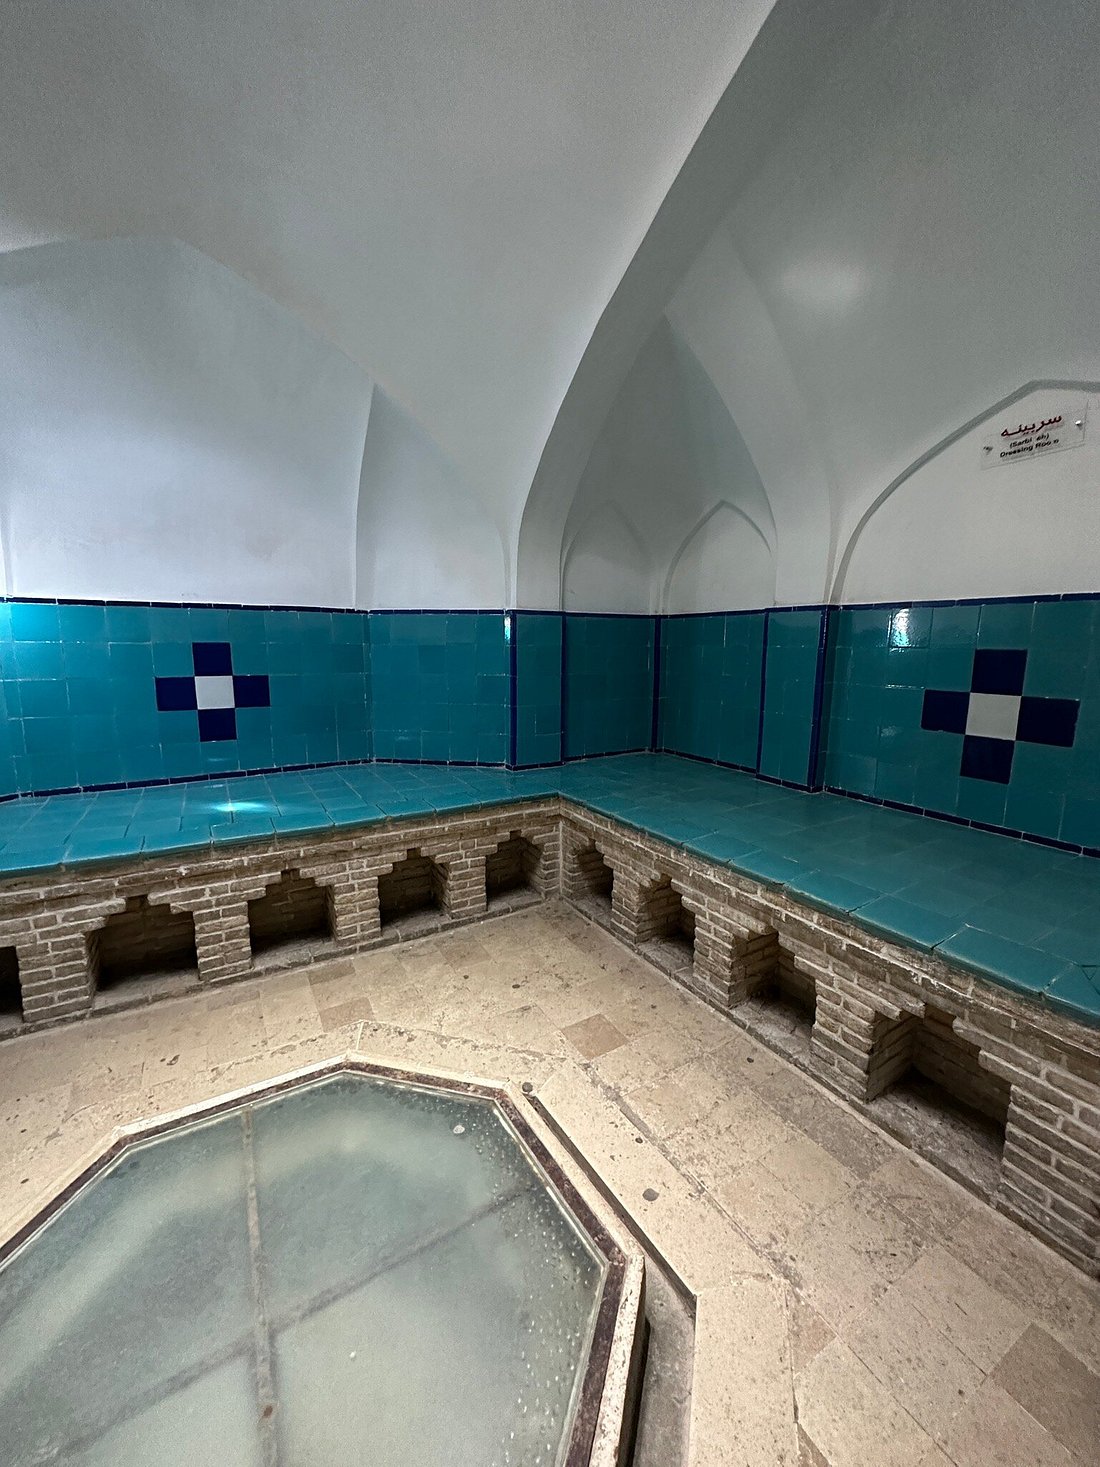 Sultan Amir Ahmad Bathhouse, Isfahan